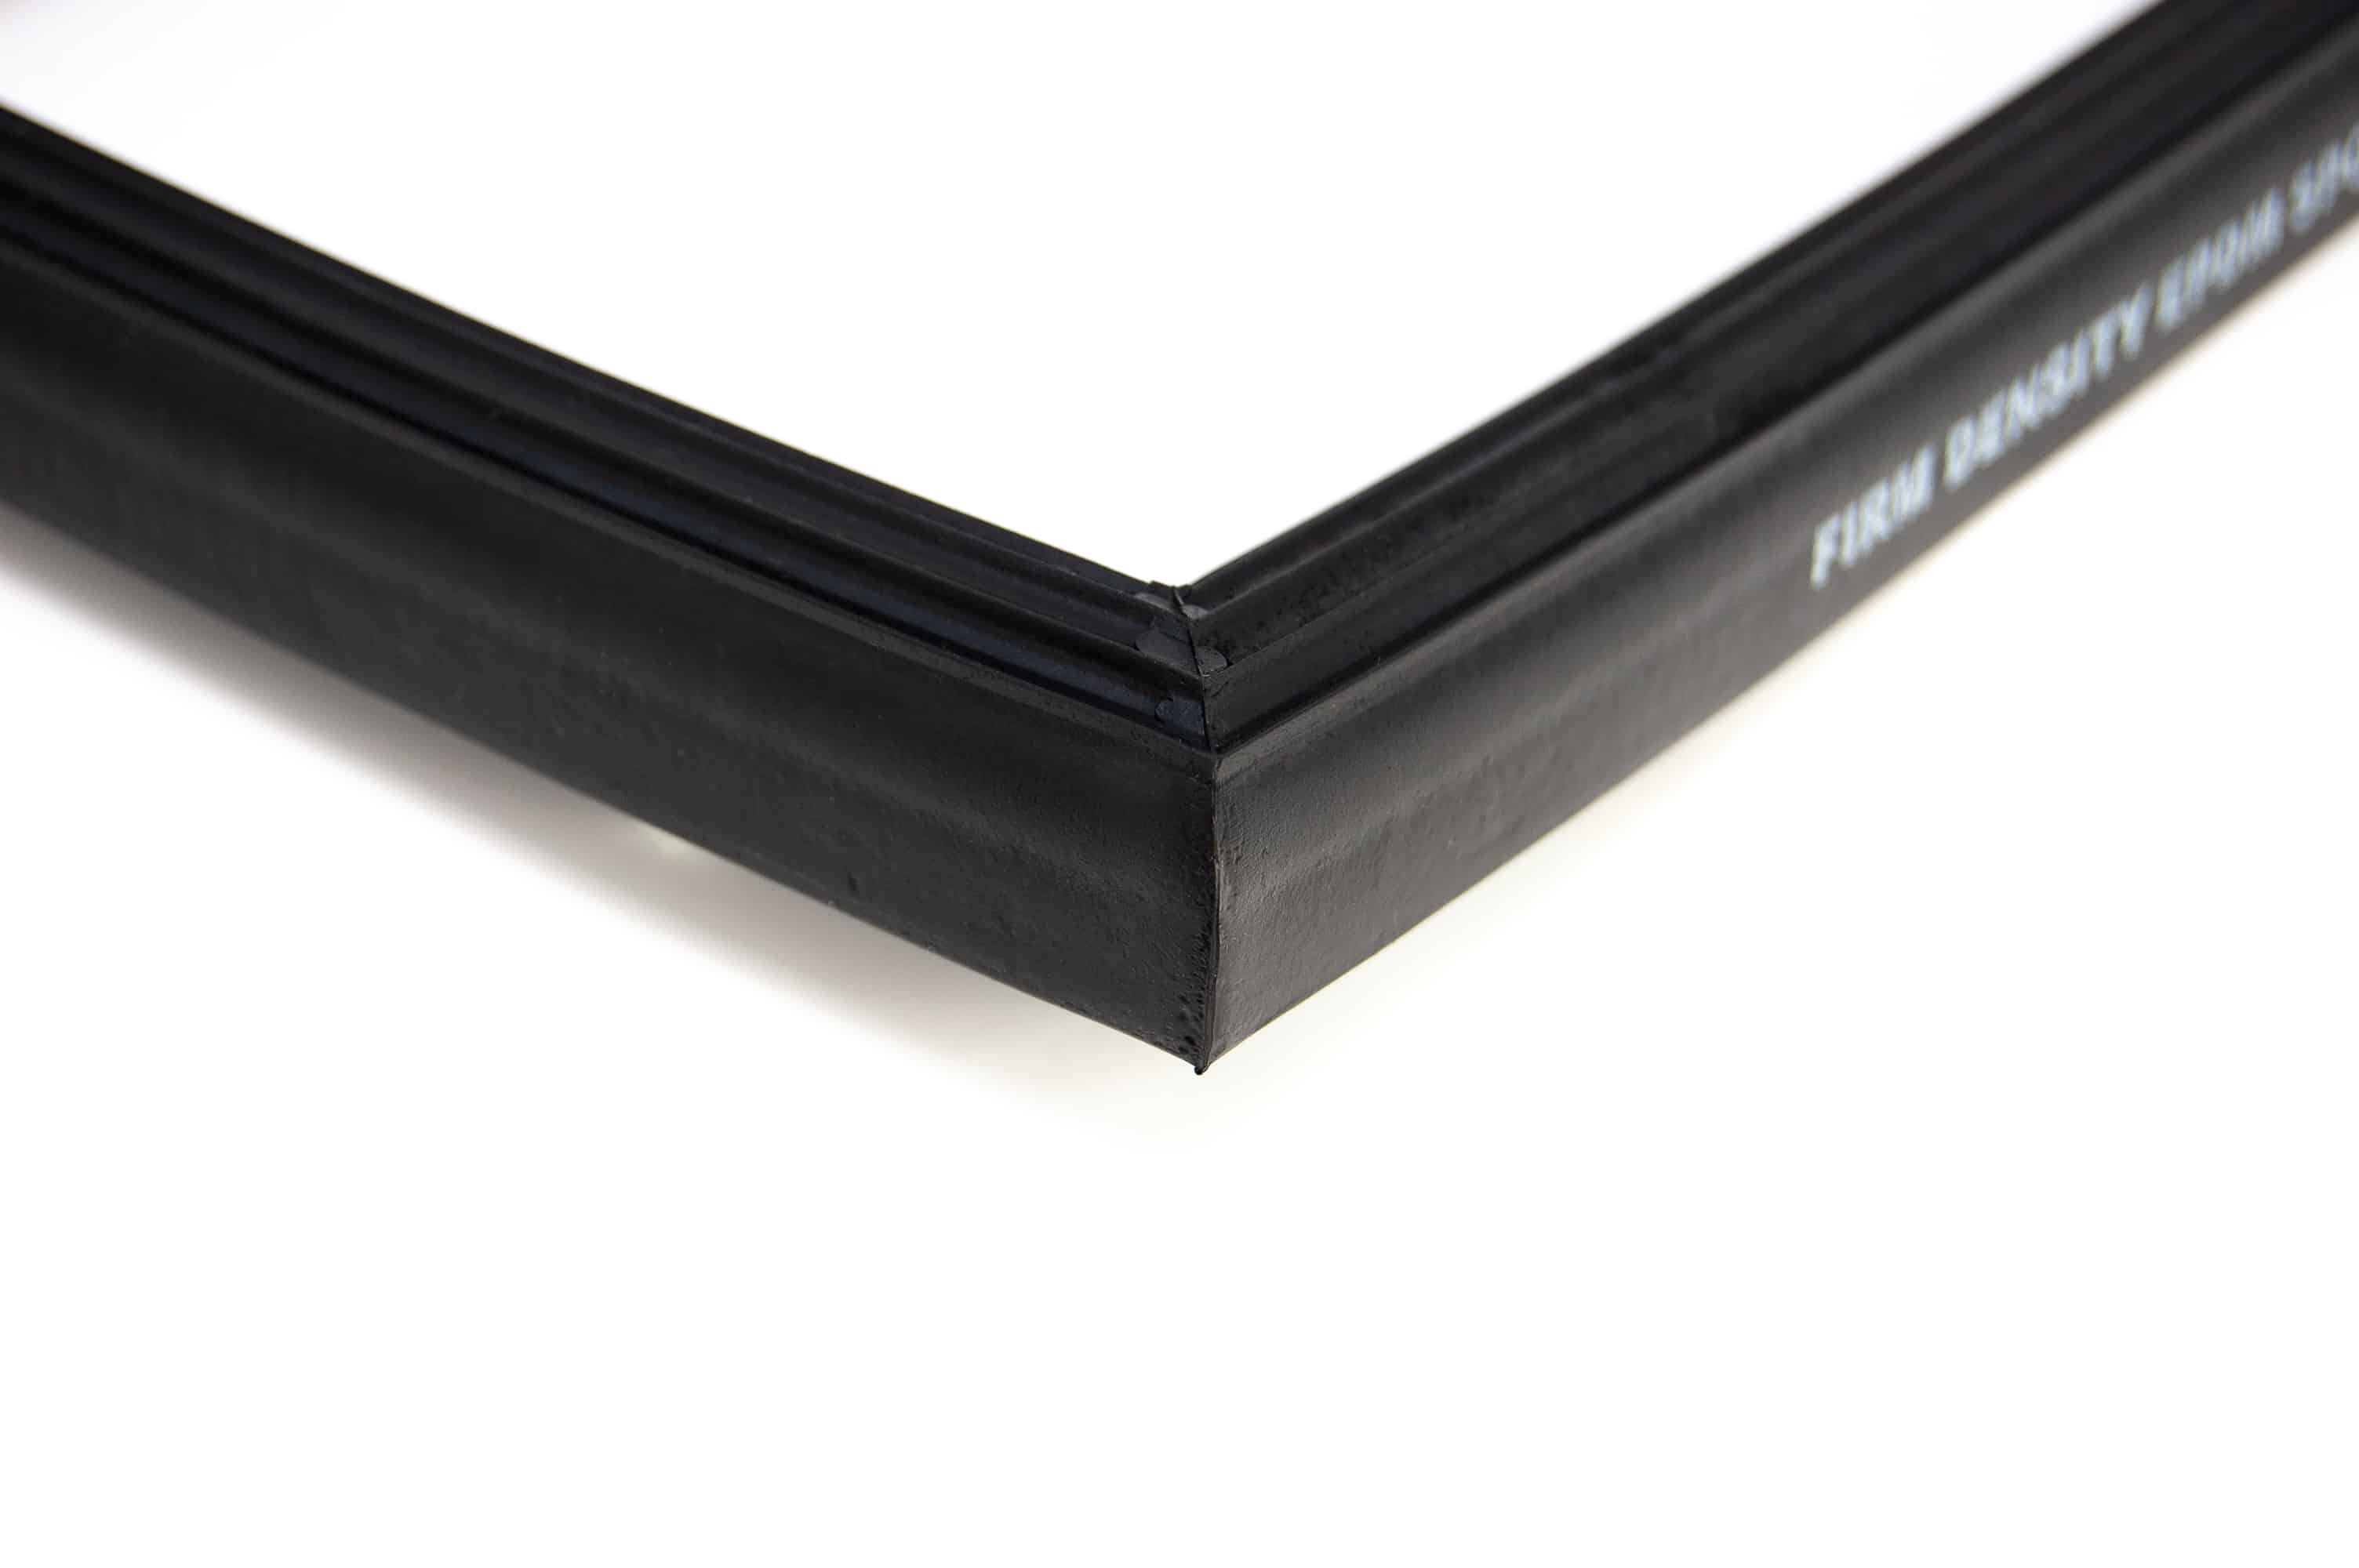 Garniture de bande de protection de bord de porte de voiture noire, joint  de protection en caoutchouc en forme de U, garniture de bordure en  caoutchouc, 11mm x 5mm, 5m